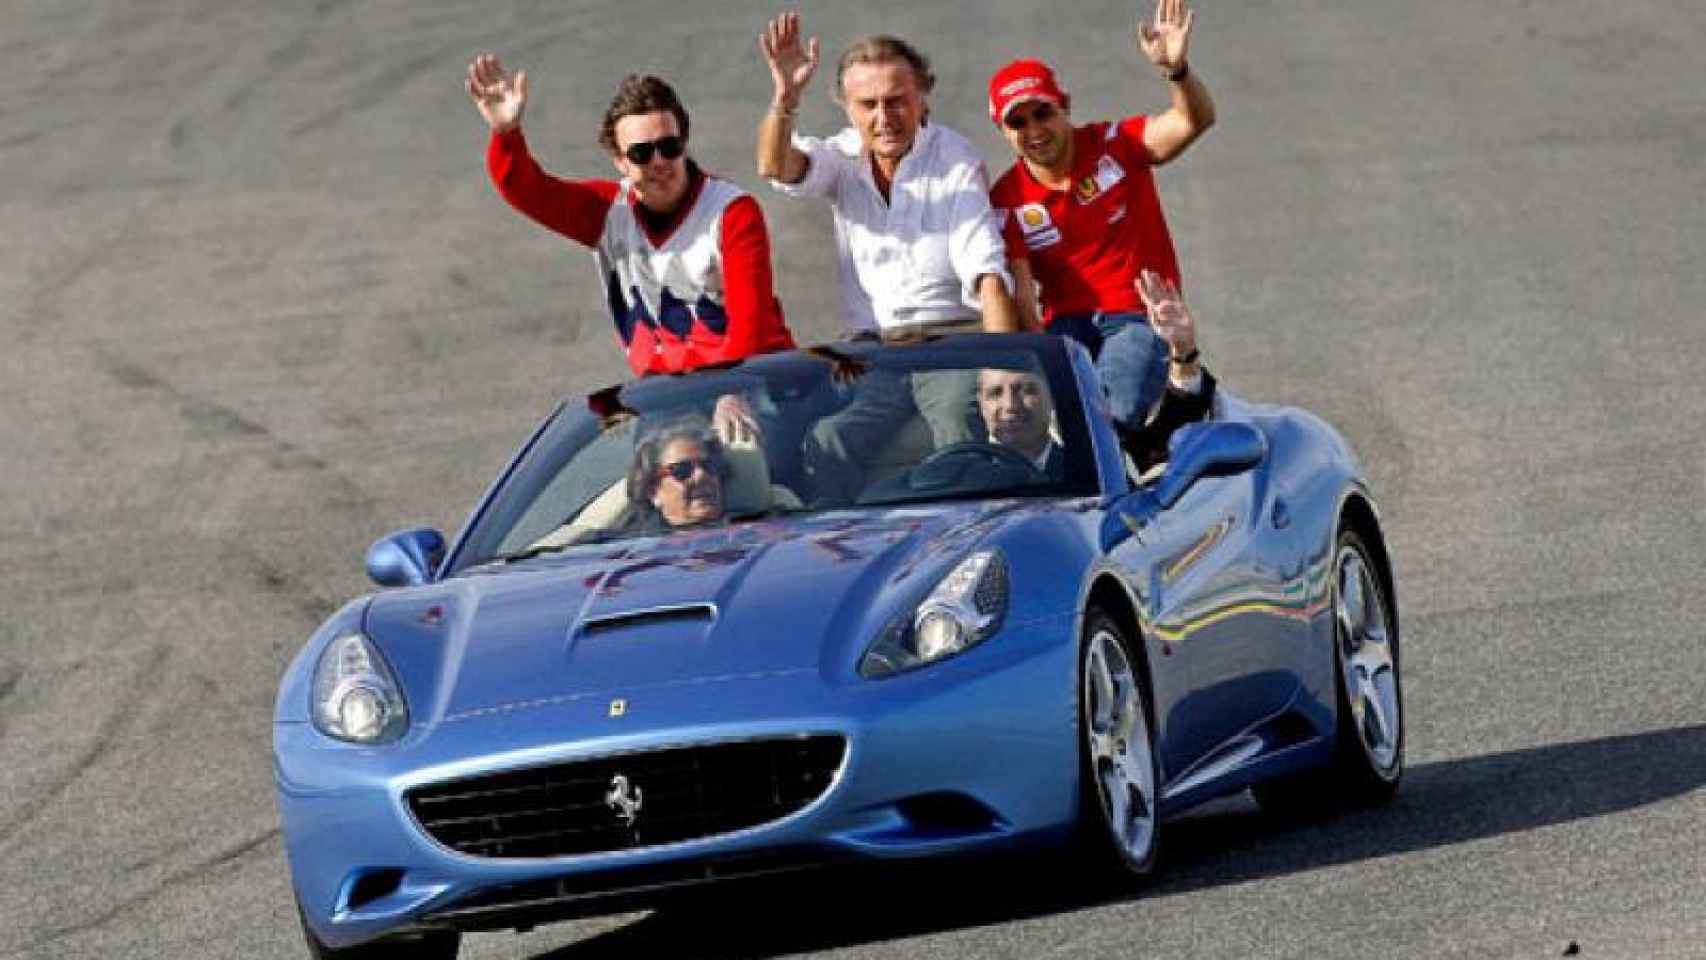 La célebre imagen de Rita Barberá y Francisco Camps portando en un Ferrari a los pilotos del equipo en 2009.